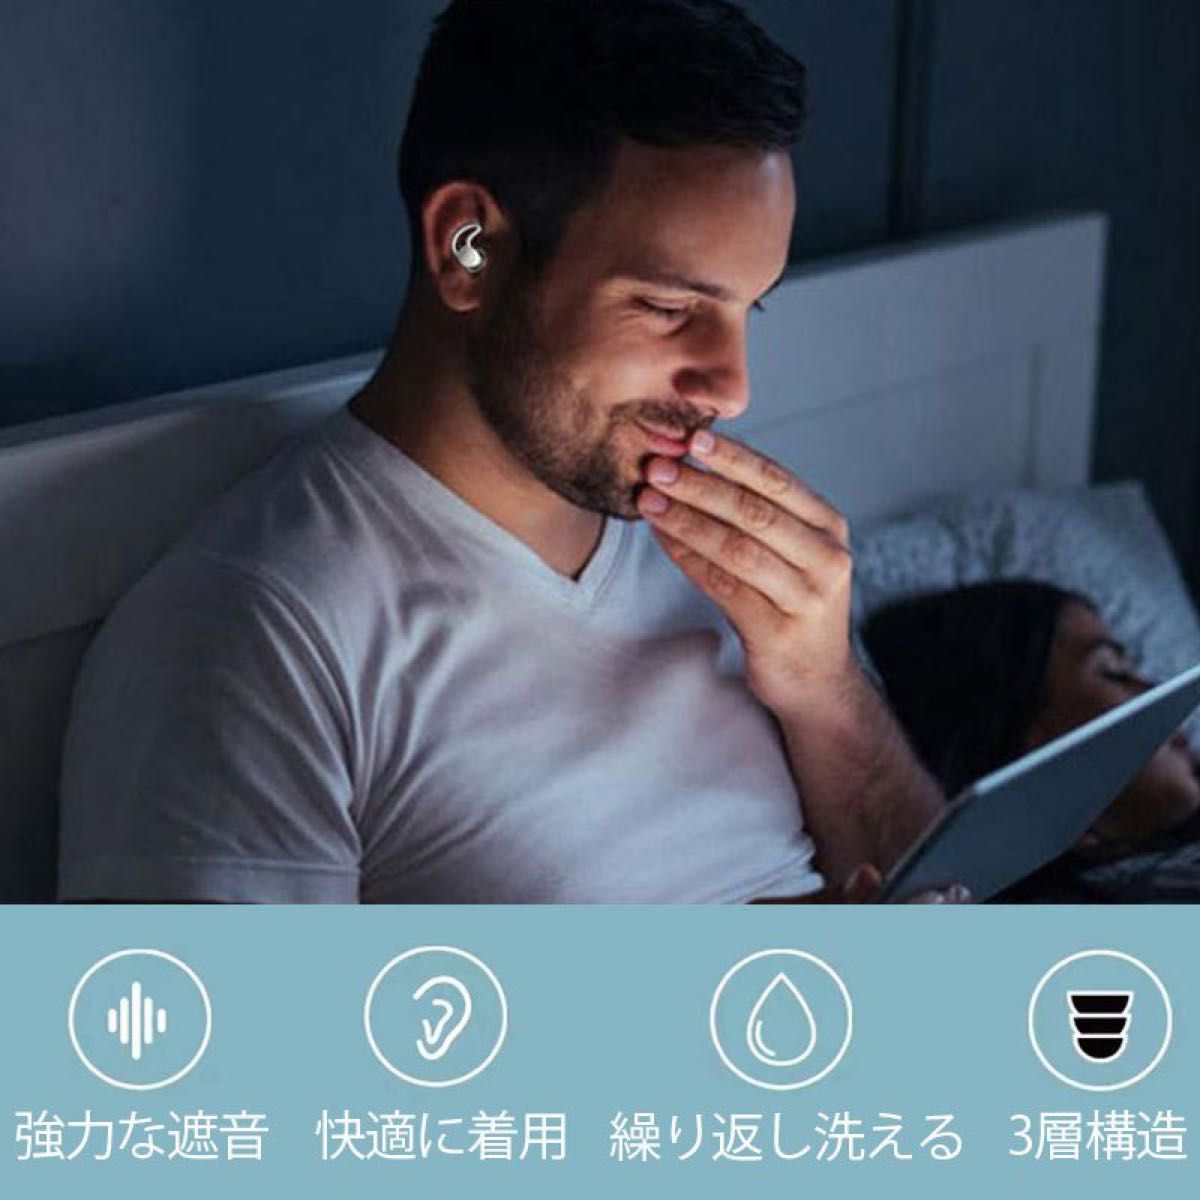 耳栓 睡眠用耳栓 最新三層超防音 アンチノイズ 繰り返し使用可能 ケース付け